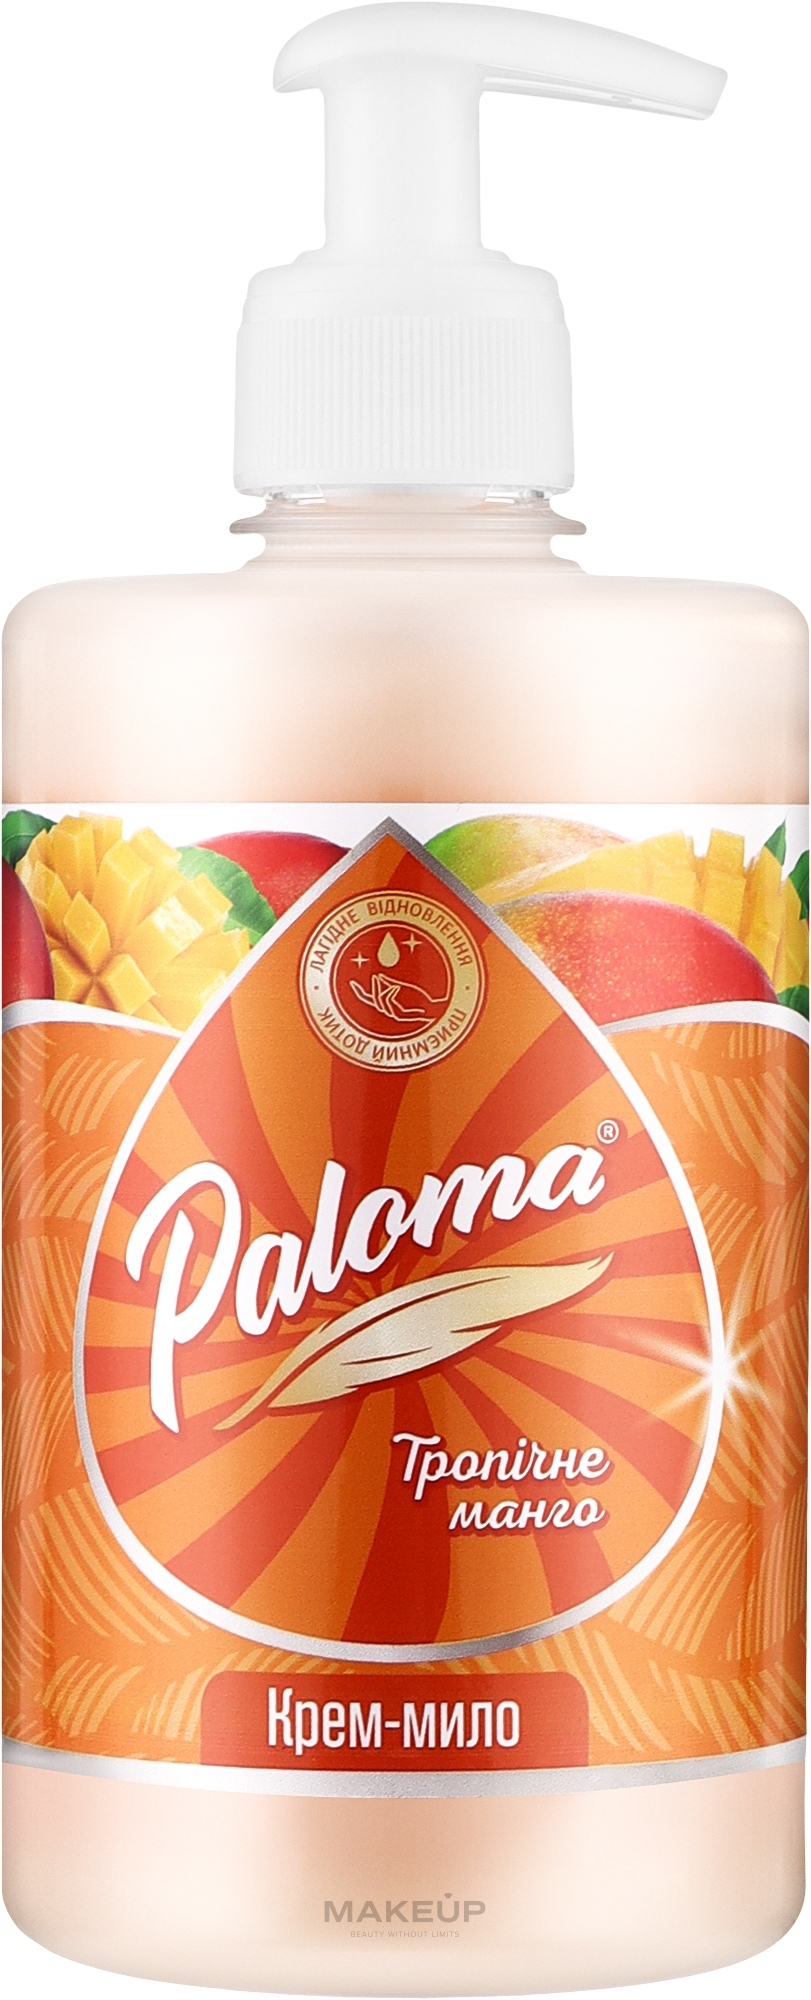 Крем-мыло "Тропическое манго" - Paloma — фото 500ml